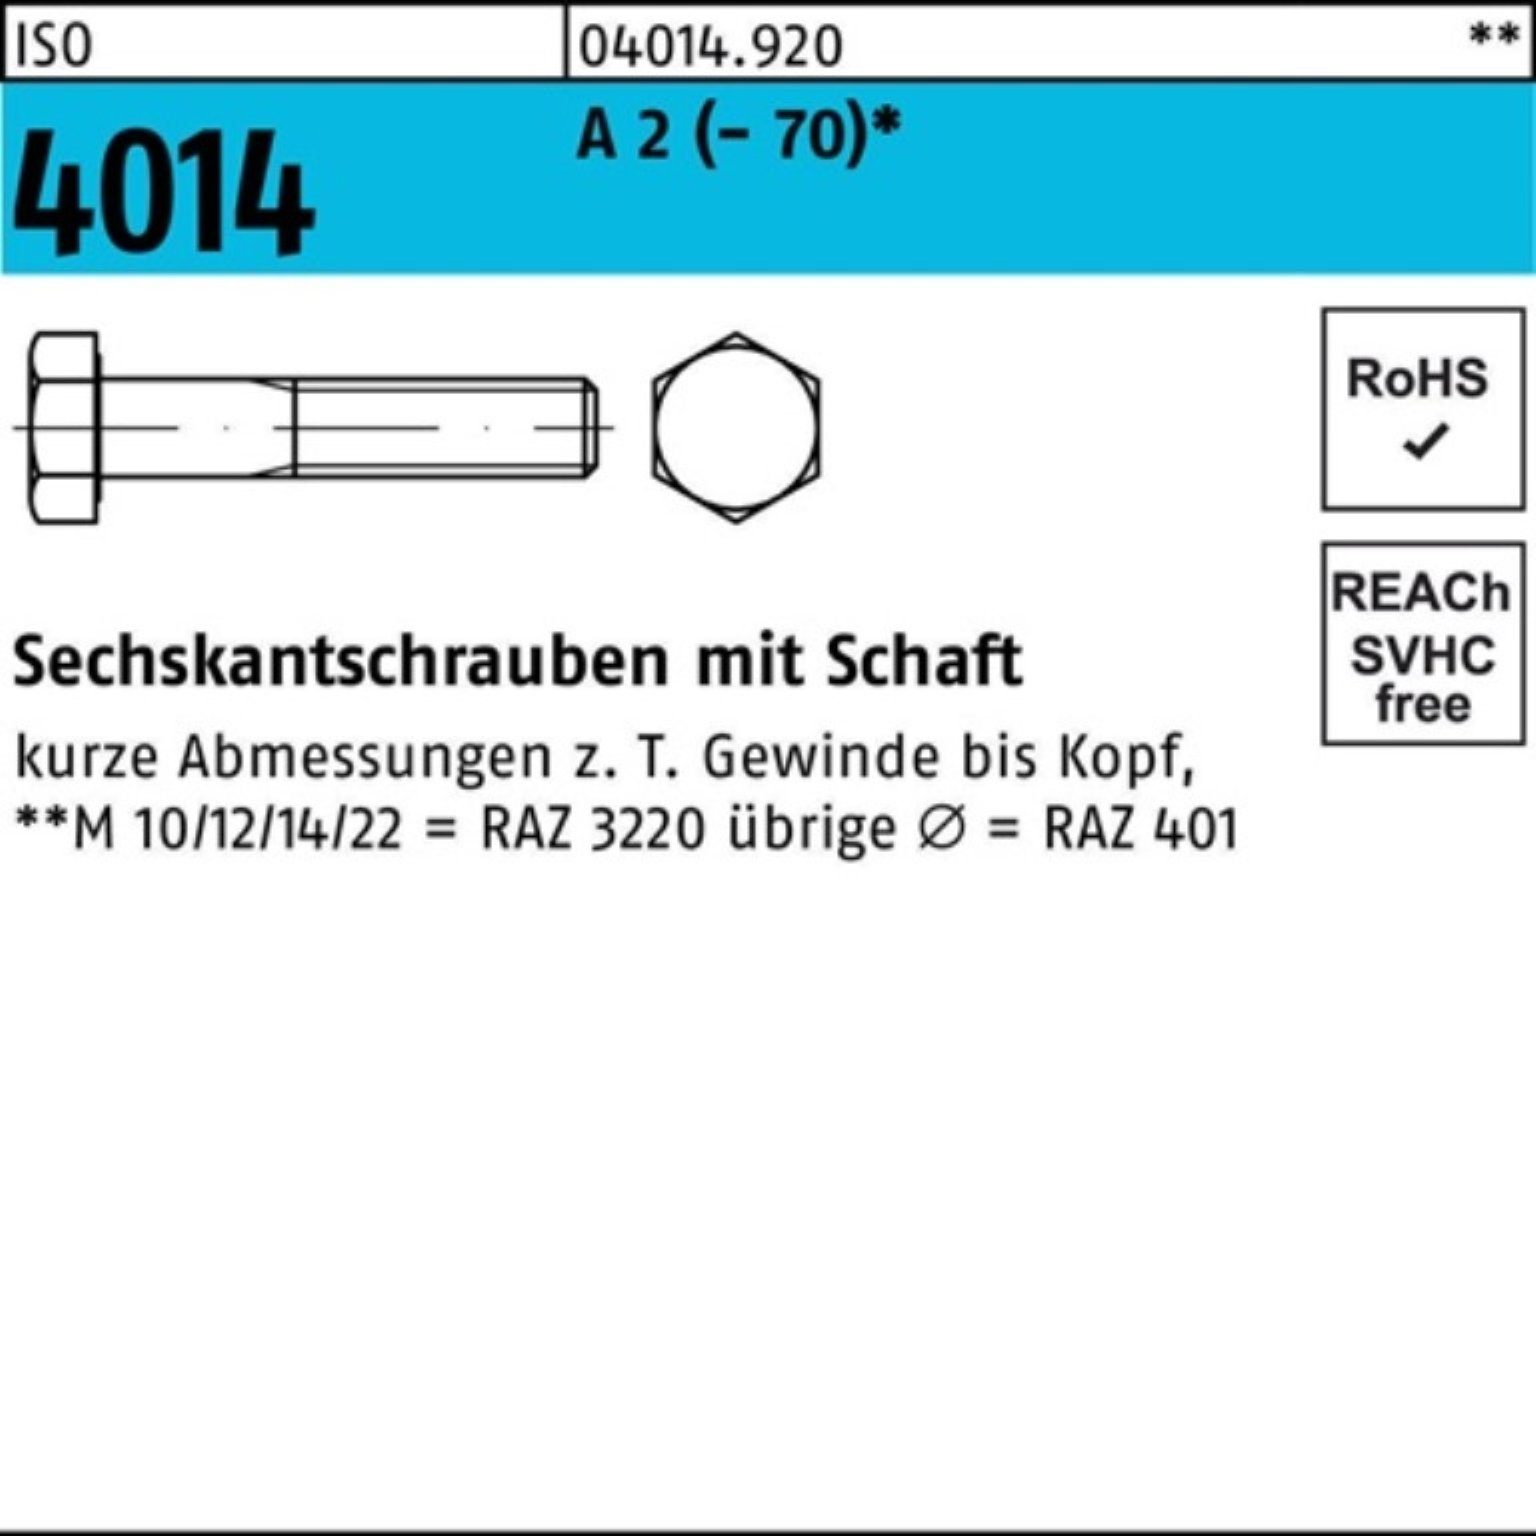 Bufab Sechskantschraube 100er Pack Sechskantschraube ISO 4014 Schaft M5x 35 A 2 (70) 100 St